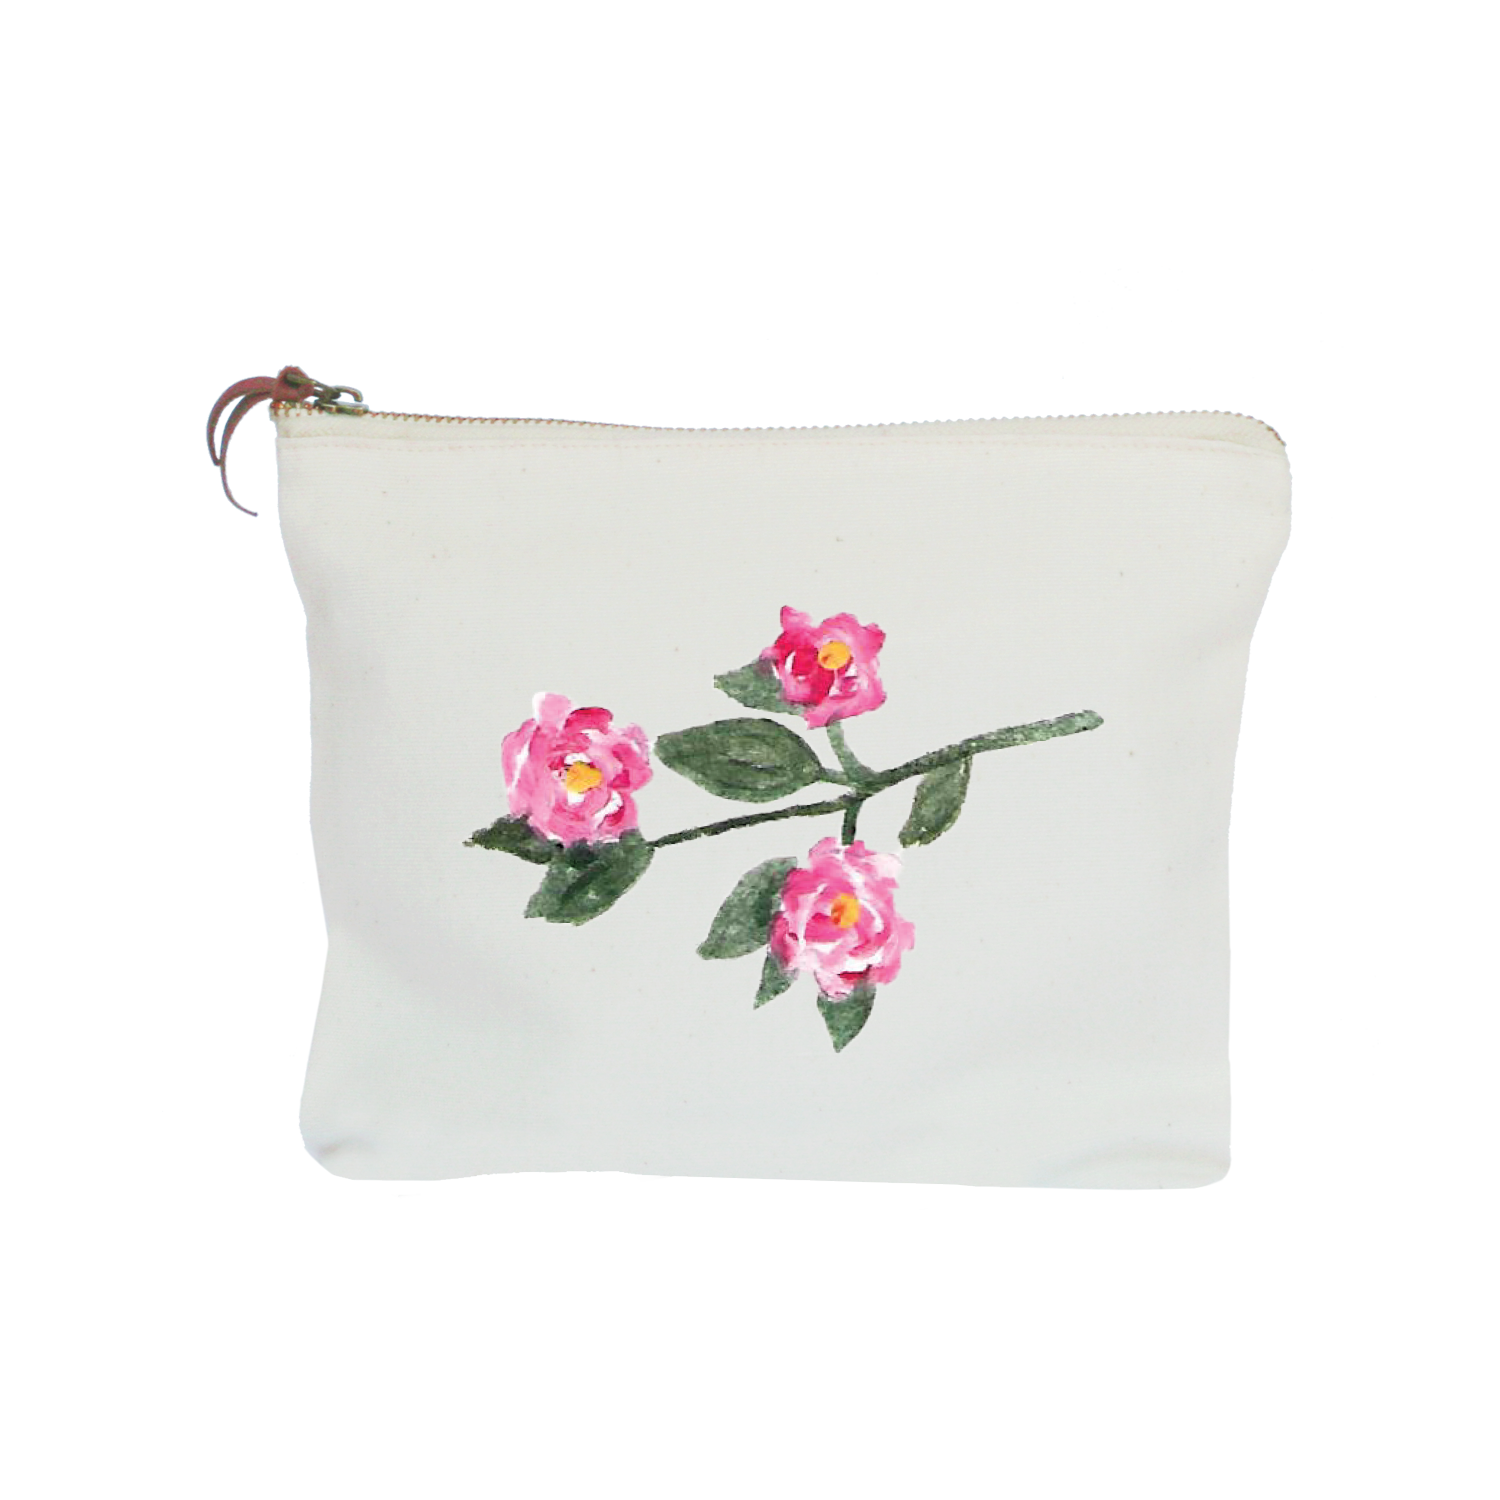 camellia zipper pouch